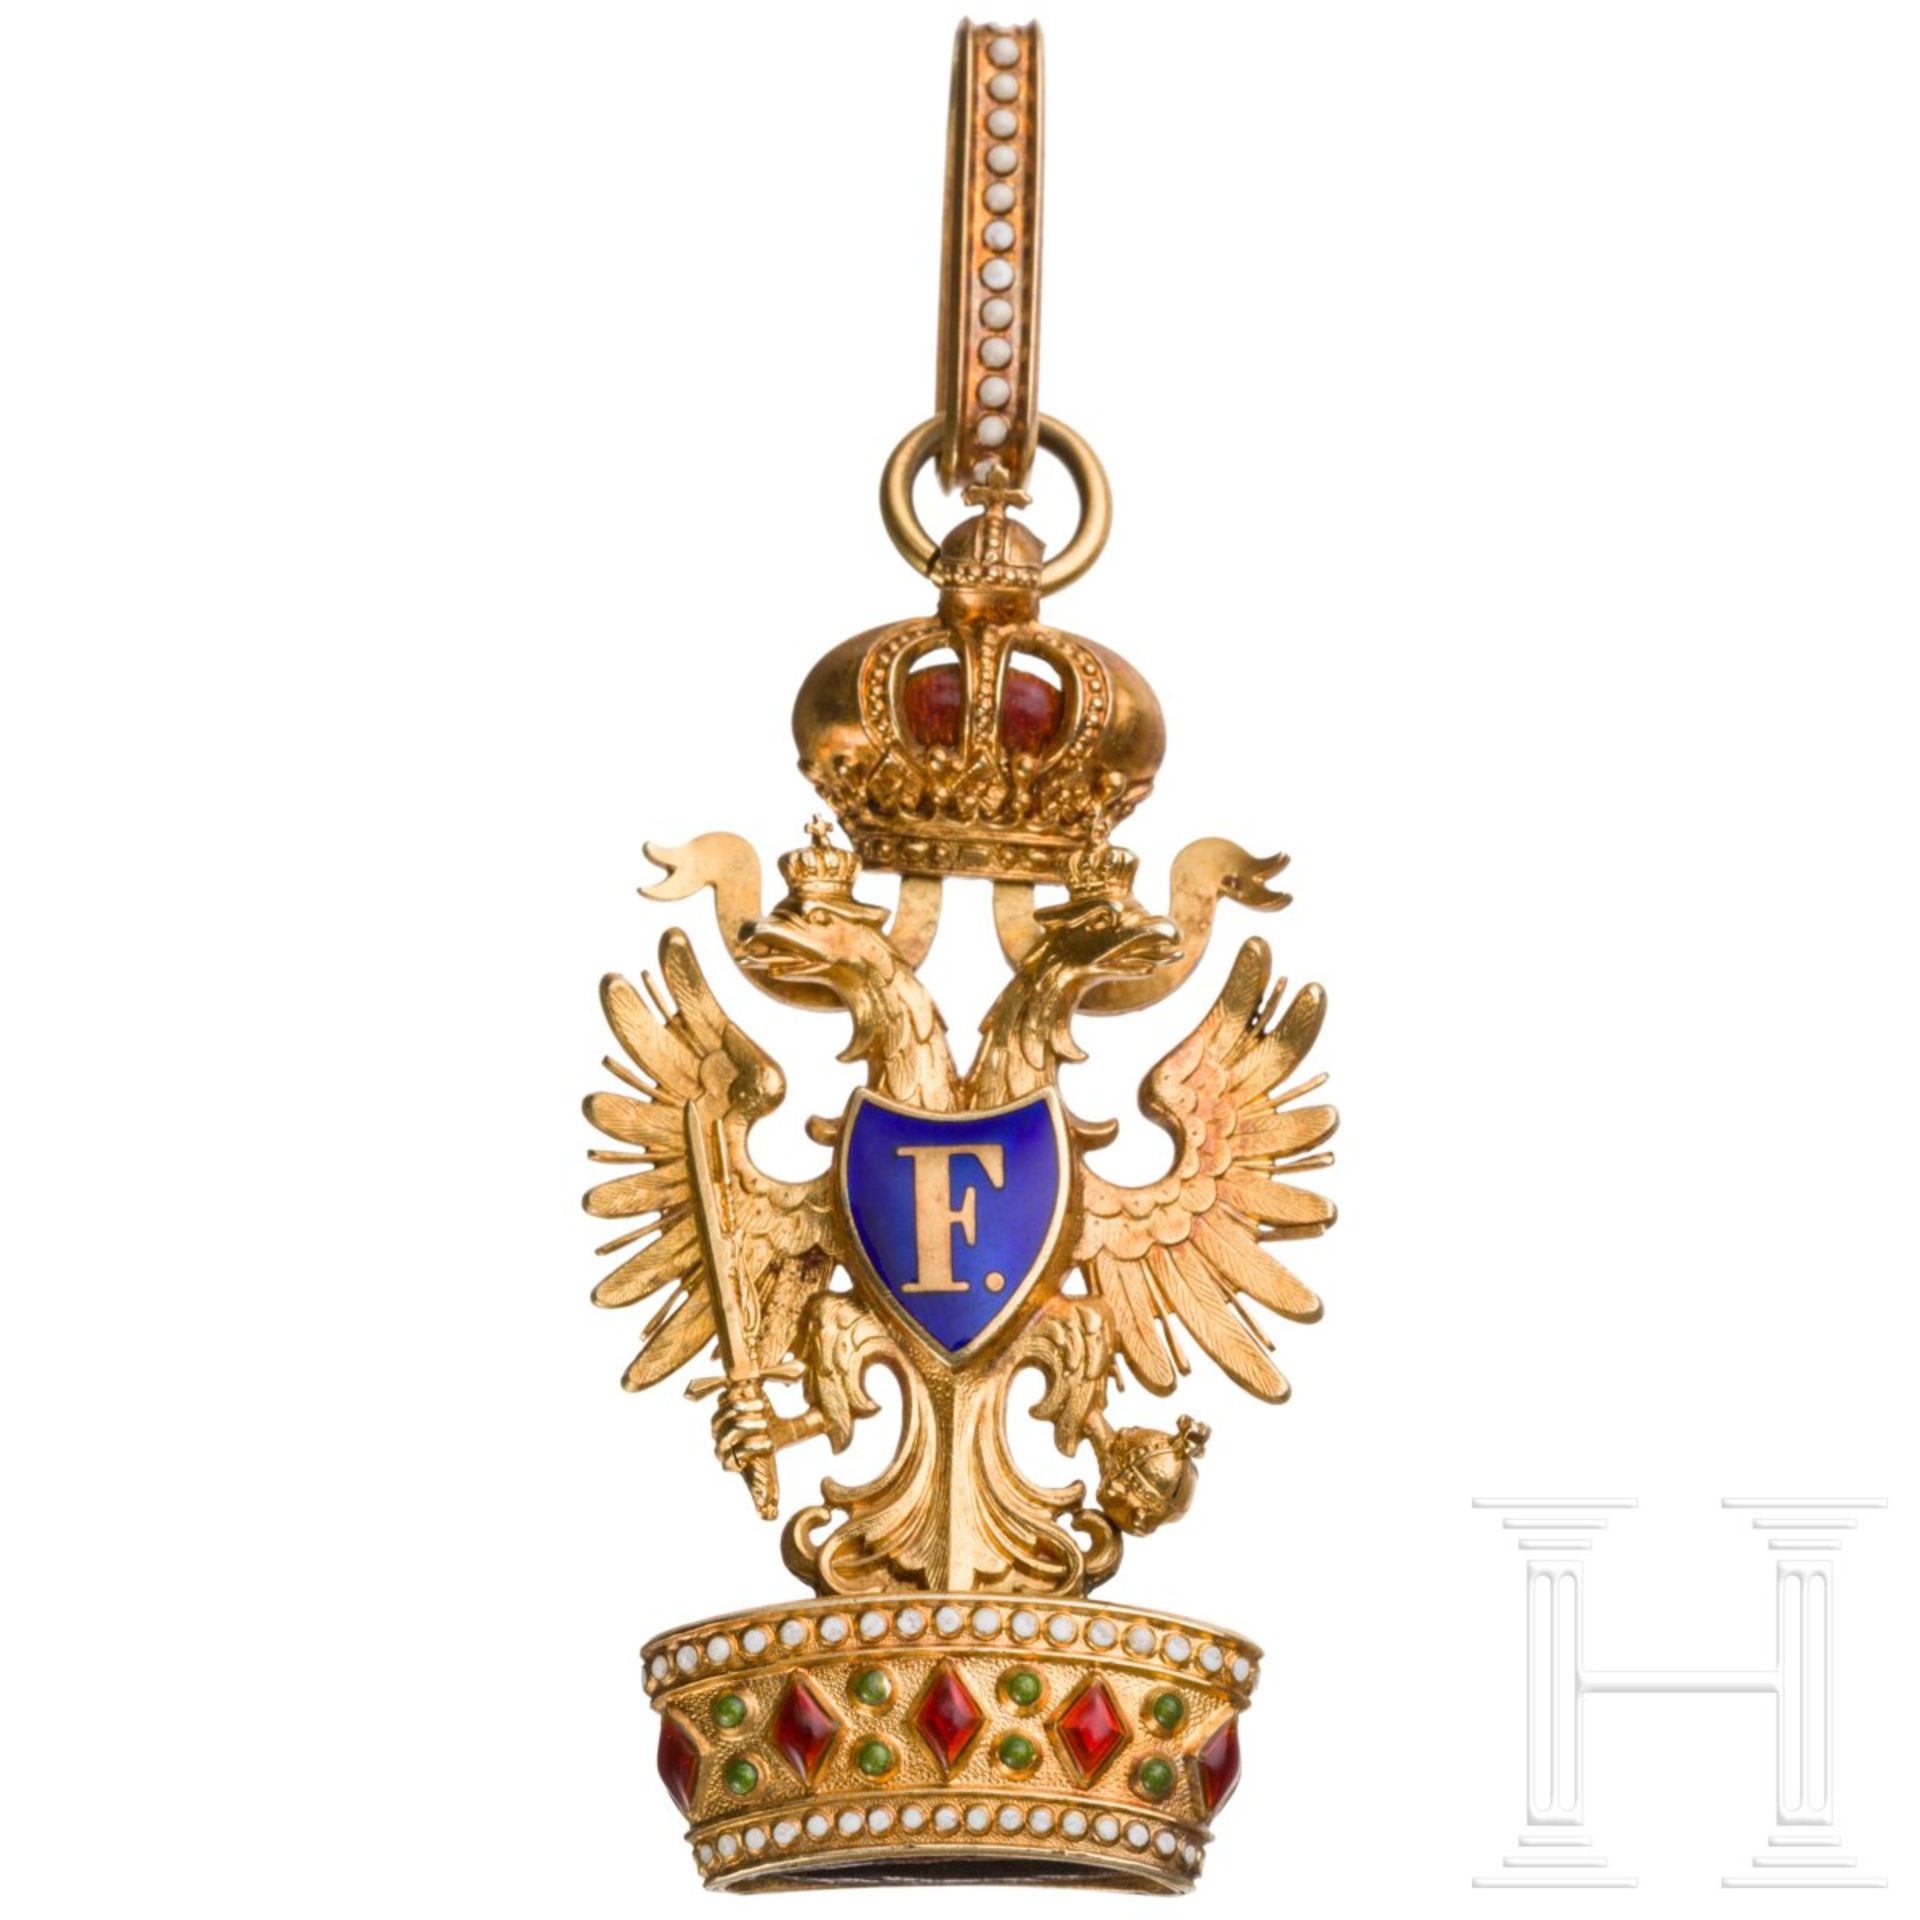 Orden der Eisernen Krone 2. Klasse von Rothe in Wien - Image 2 of 7